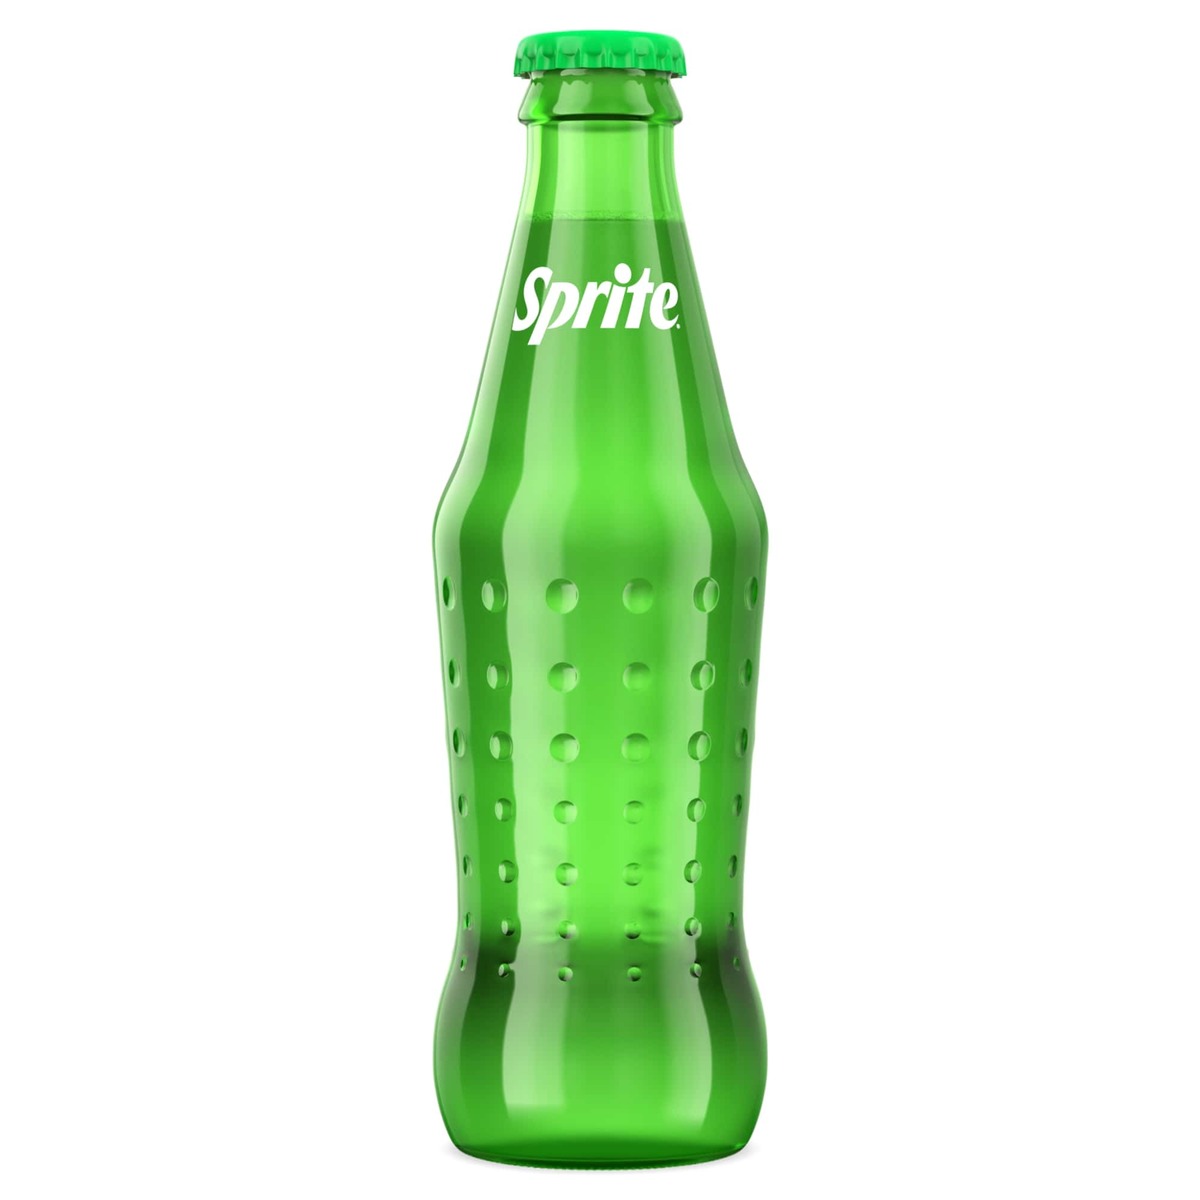 اشتري قم بشراء سبرايت عادي 250 مل Online at Best Price من الموقع - من لولو هايبر ماركت Cola Bottle في السعودية